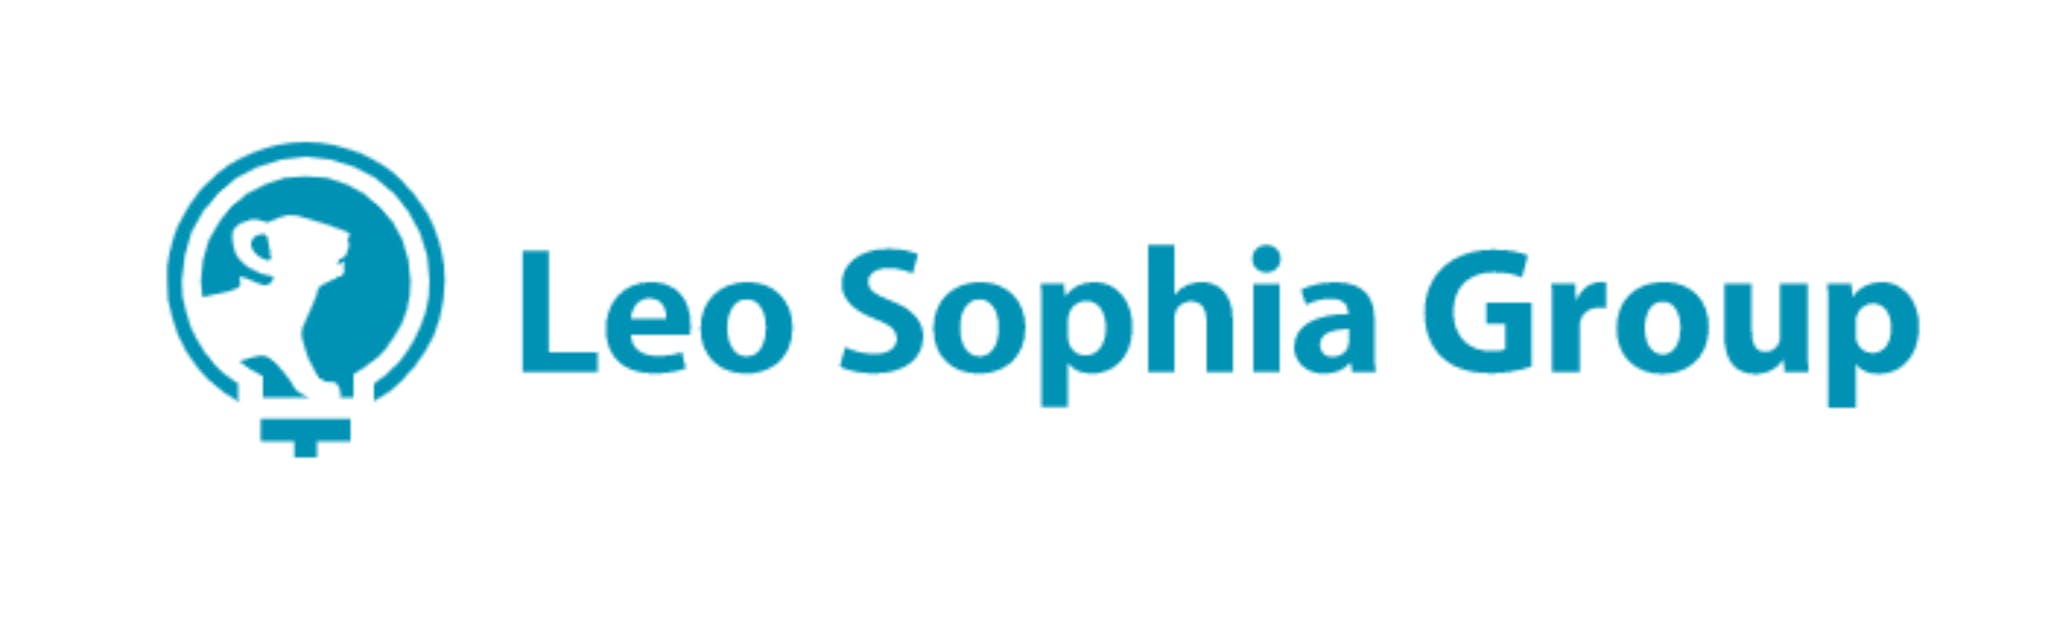 株式会社Leo Sophia Group - カバー画像